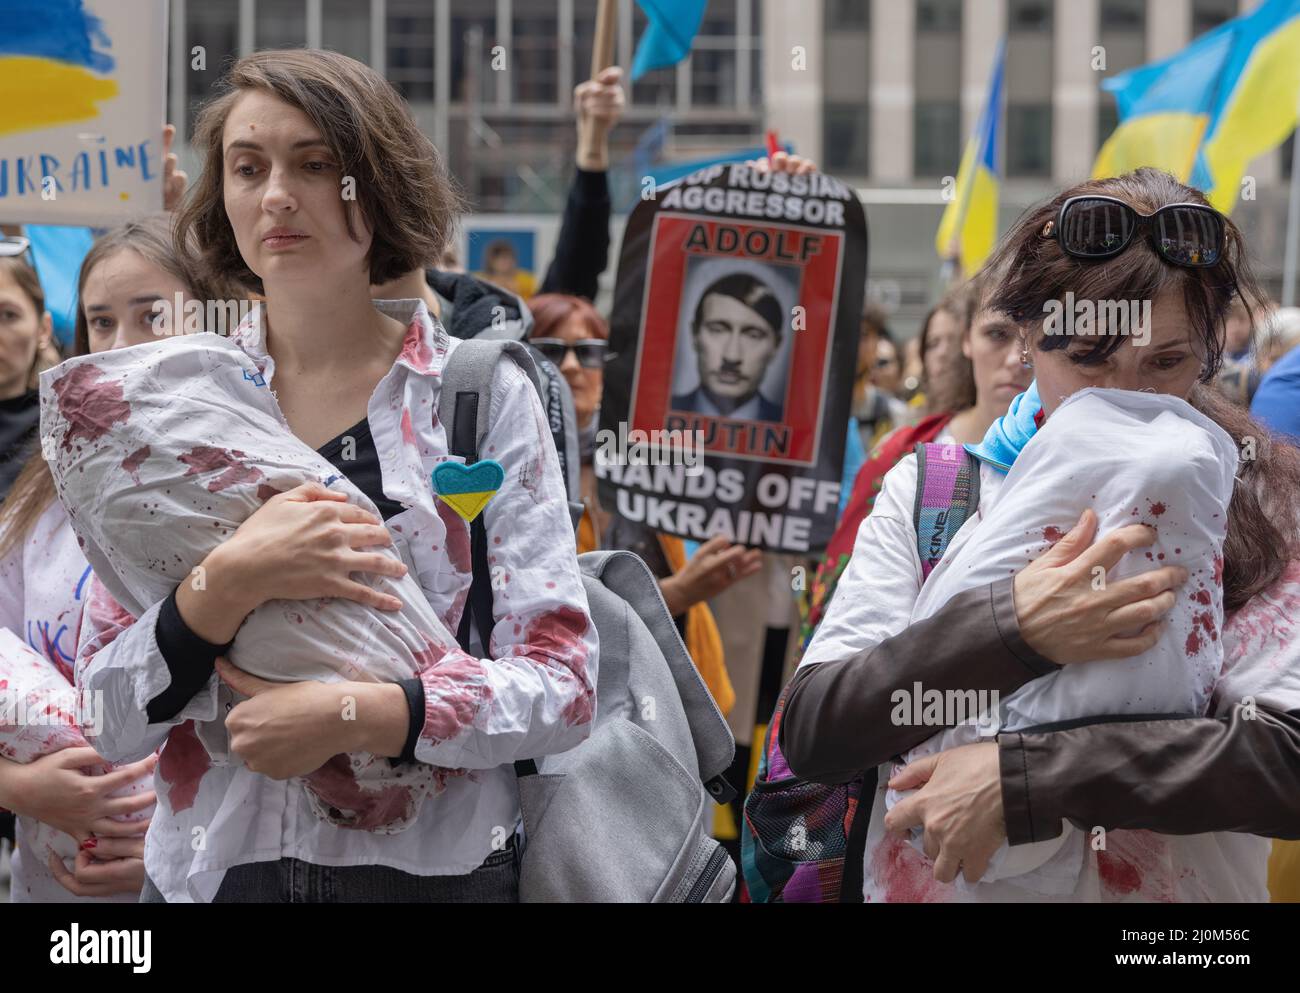 NEW YORK, N.Y. – 19 marzo 2022: I manifestanti si riuniscono al di fuori della sede centrale di Fox News per protestare contro l’invasione dell’Ucraina da parte della Russia. Foto Stock